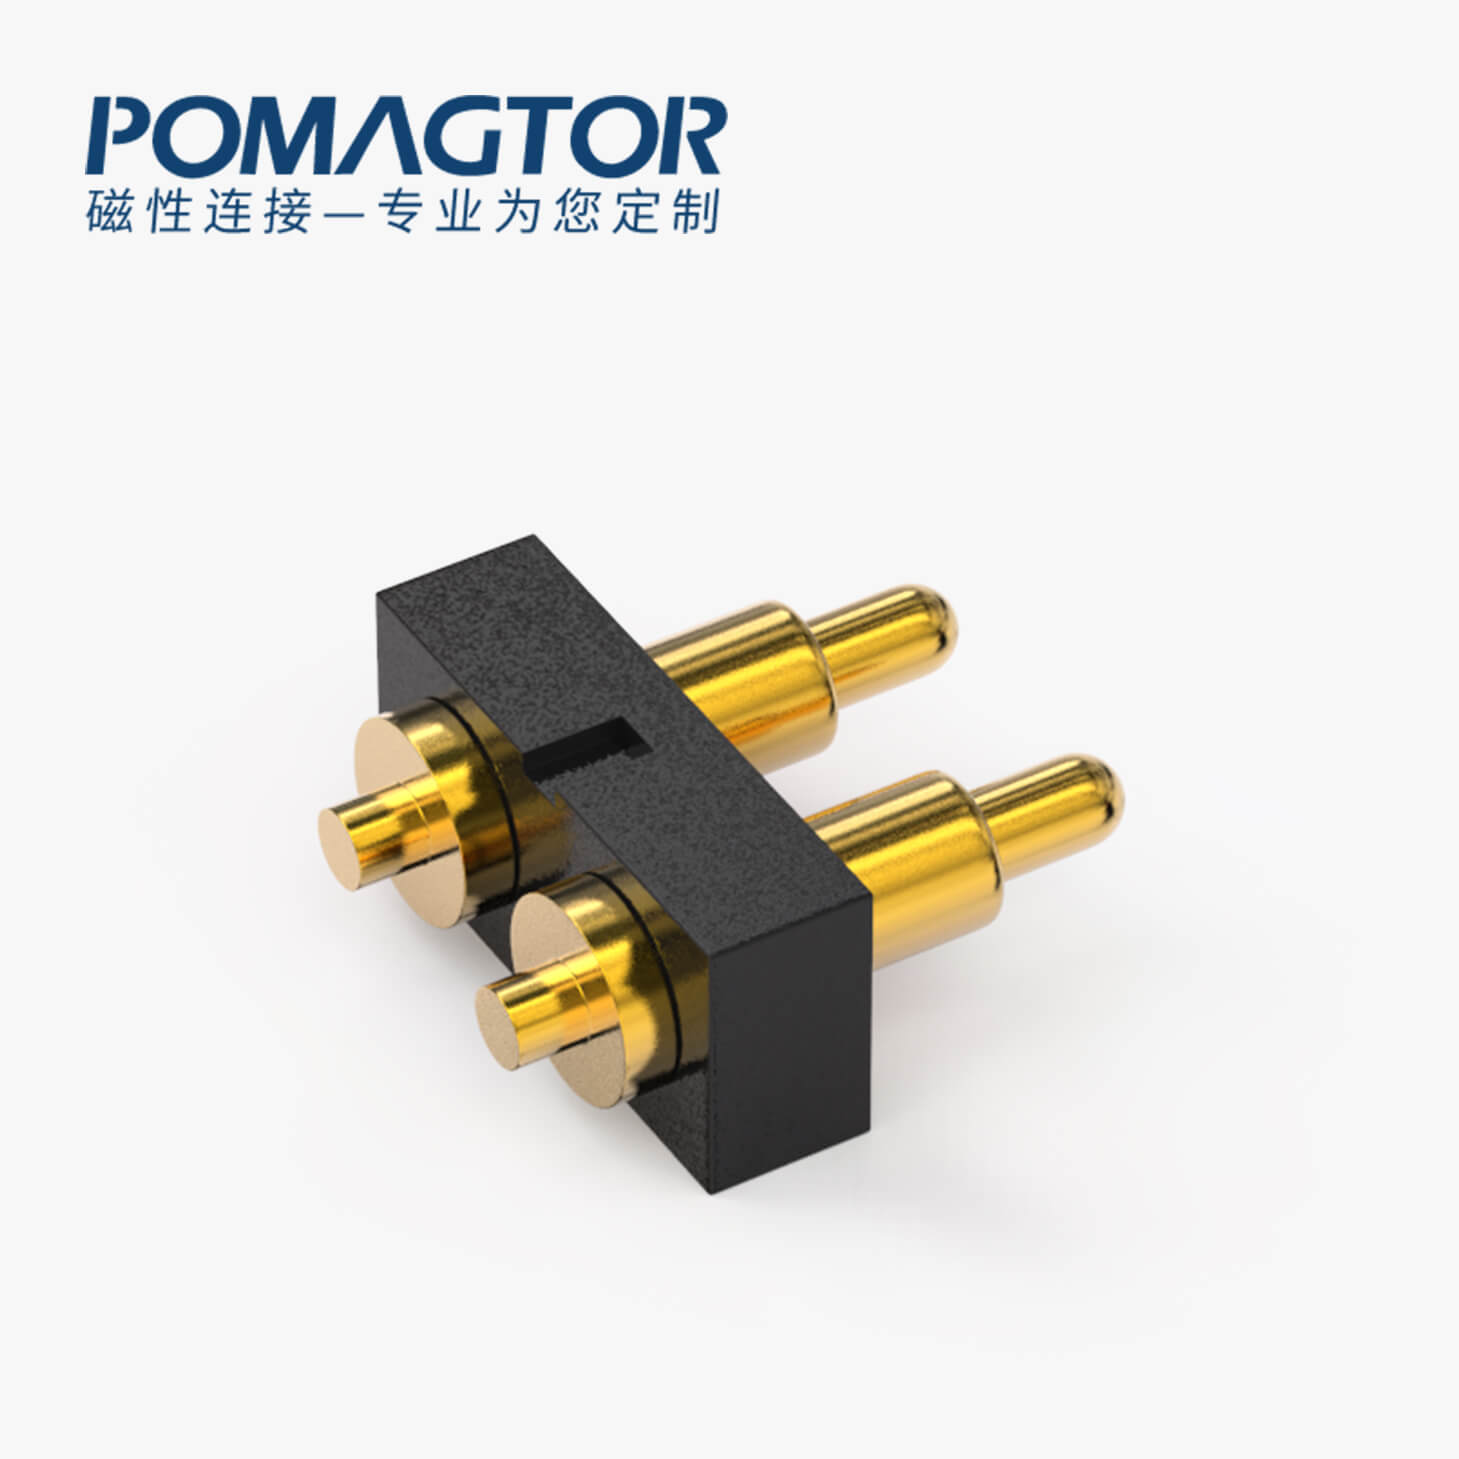 POGO PIN連接器 DIP式：2PIN，電鍍黃銅Au4u，電壓36V，電流1A，工作行程1.0mm:35±20gf，彈力30000次+，工作溫度-30°~85°